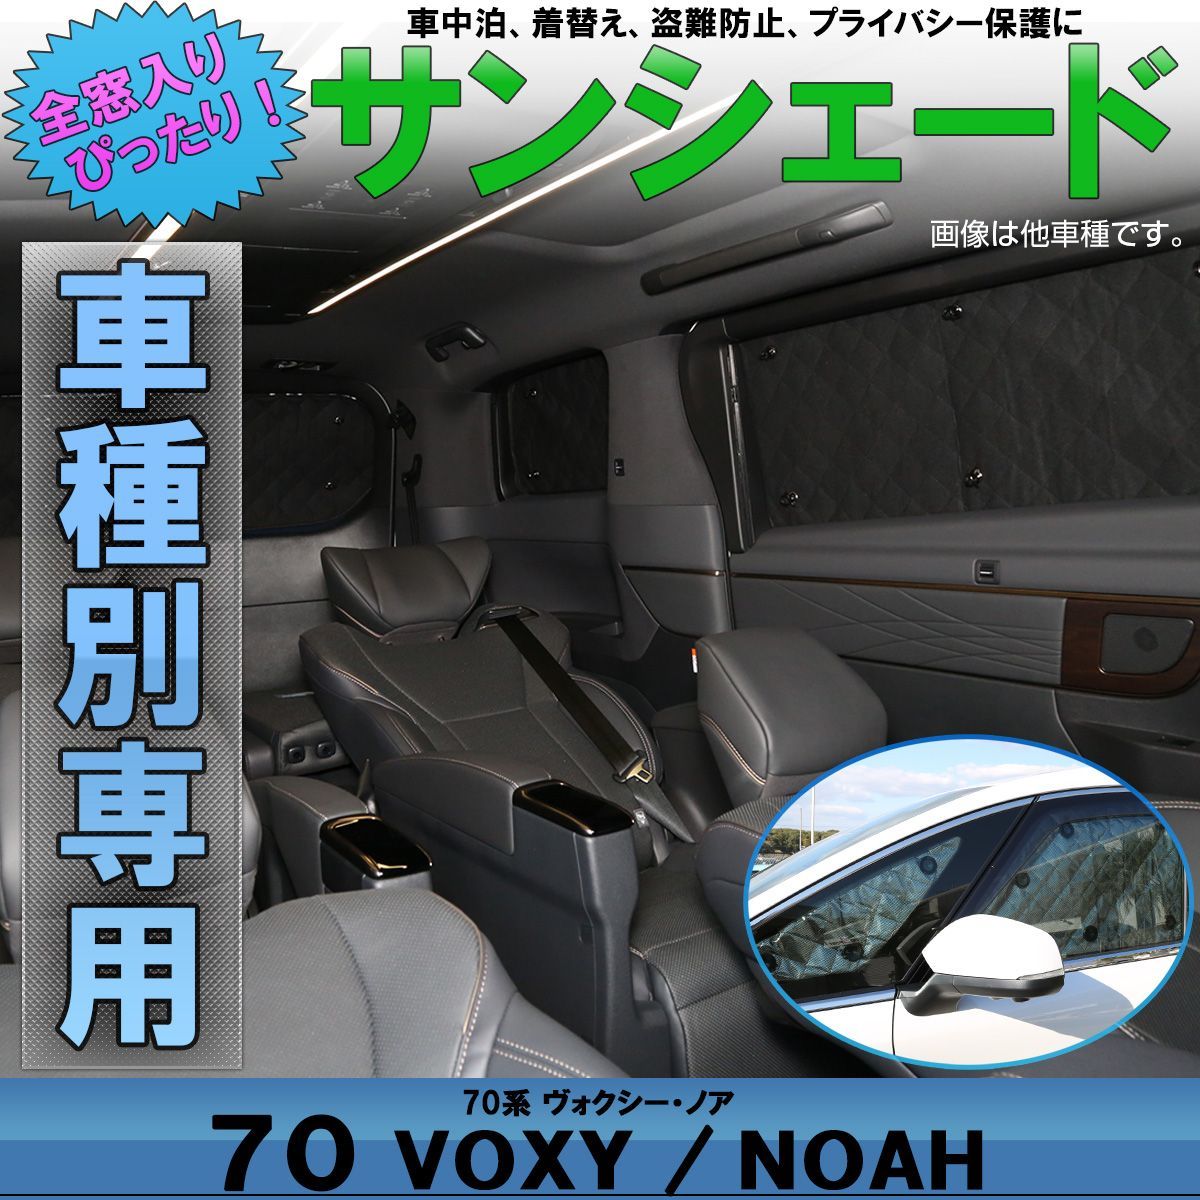 70系VOXY NOAHプライバシーサンシェード - 車内アクセサリー